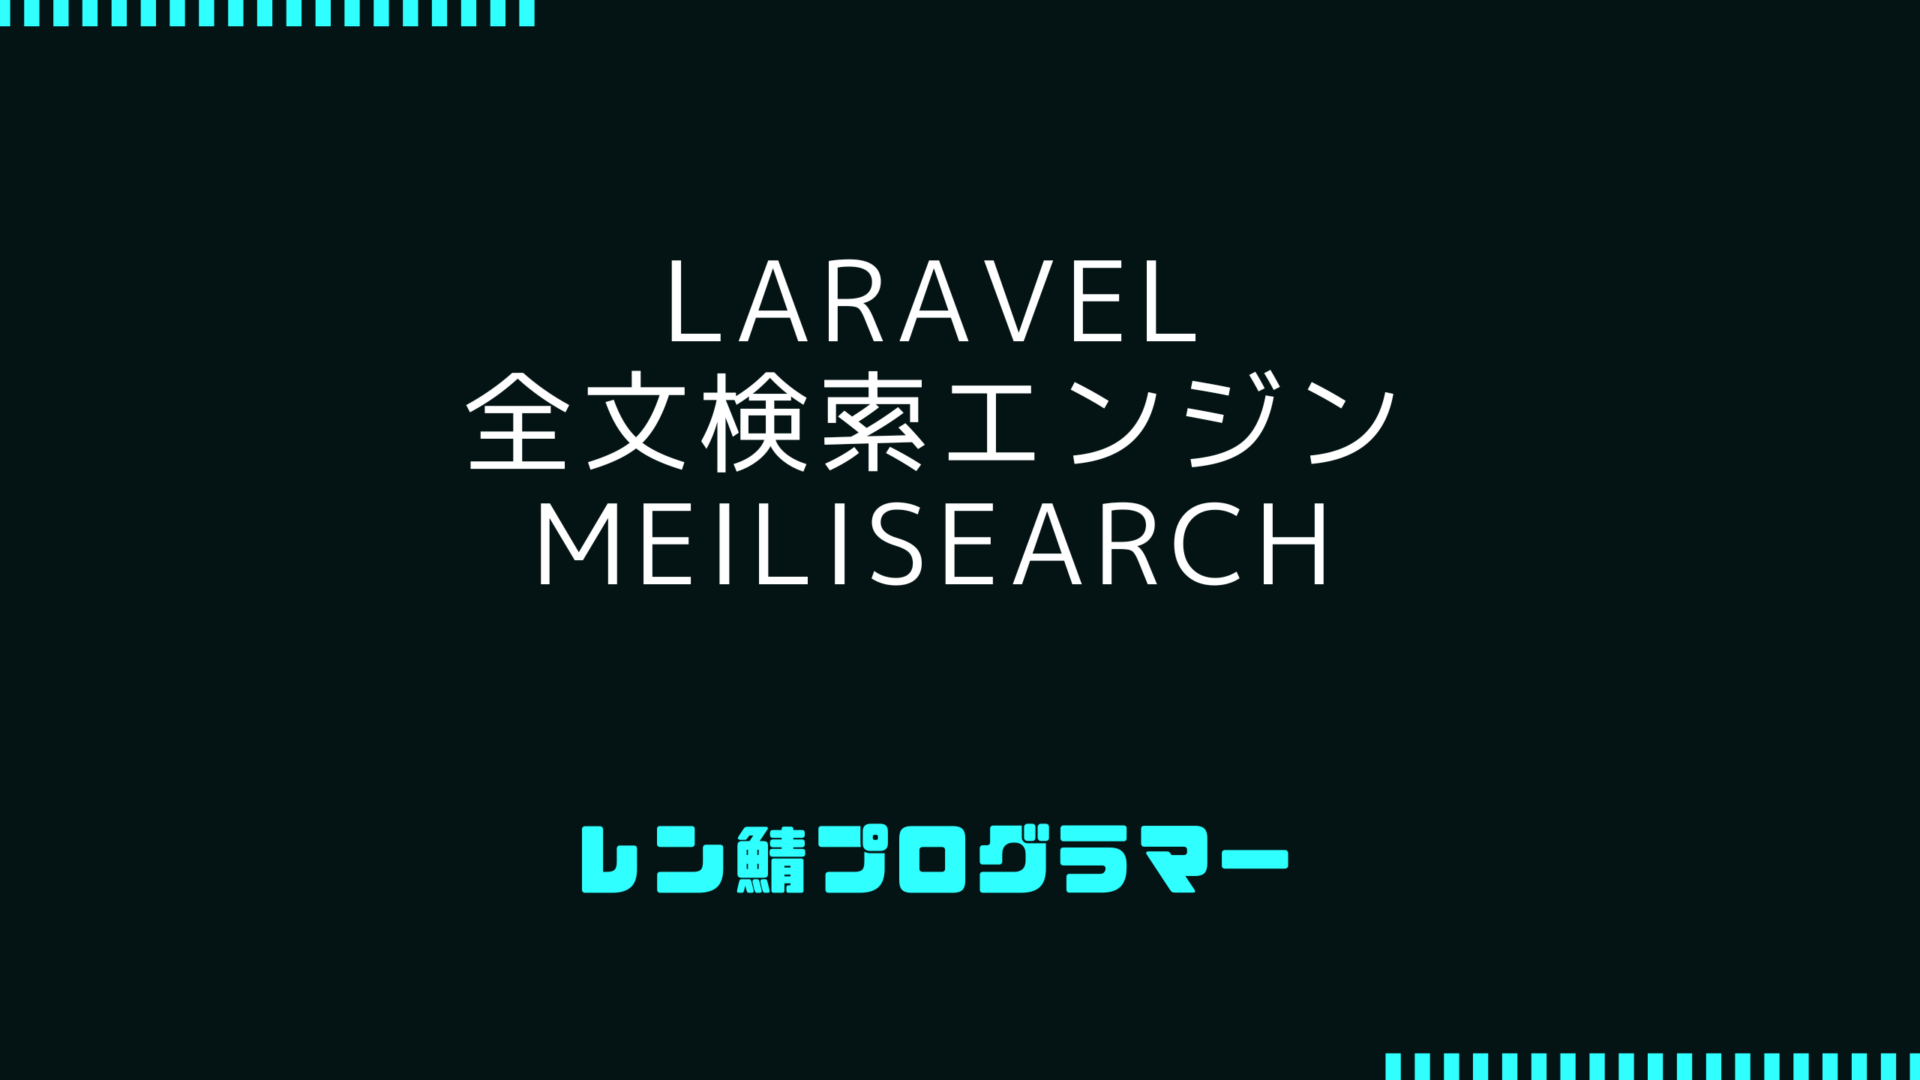 Laravelで全文検索エンジンのMeilisearchを使ってみた